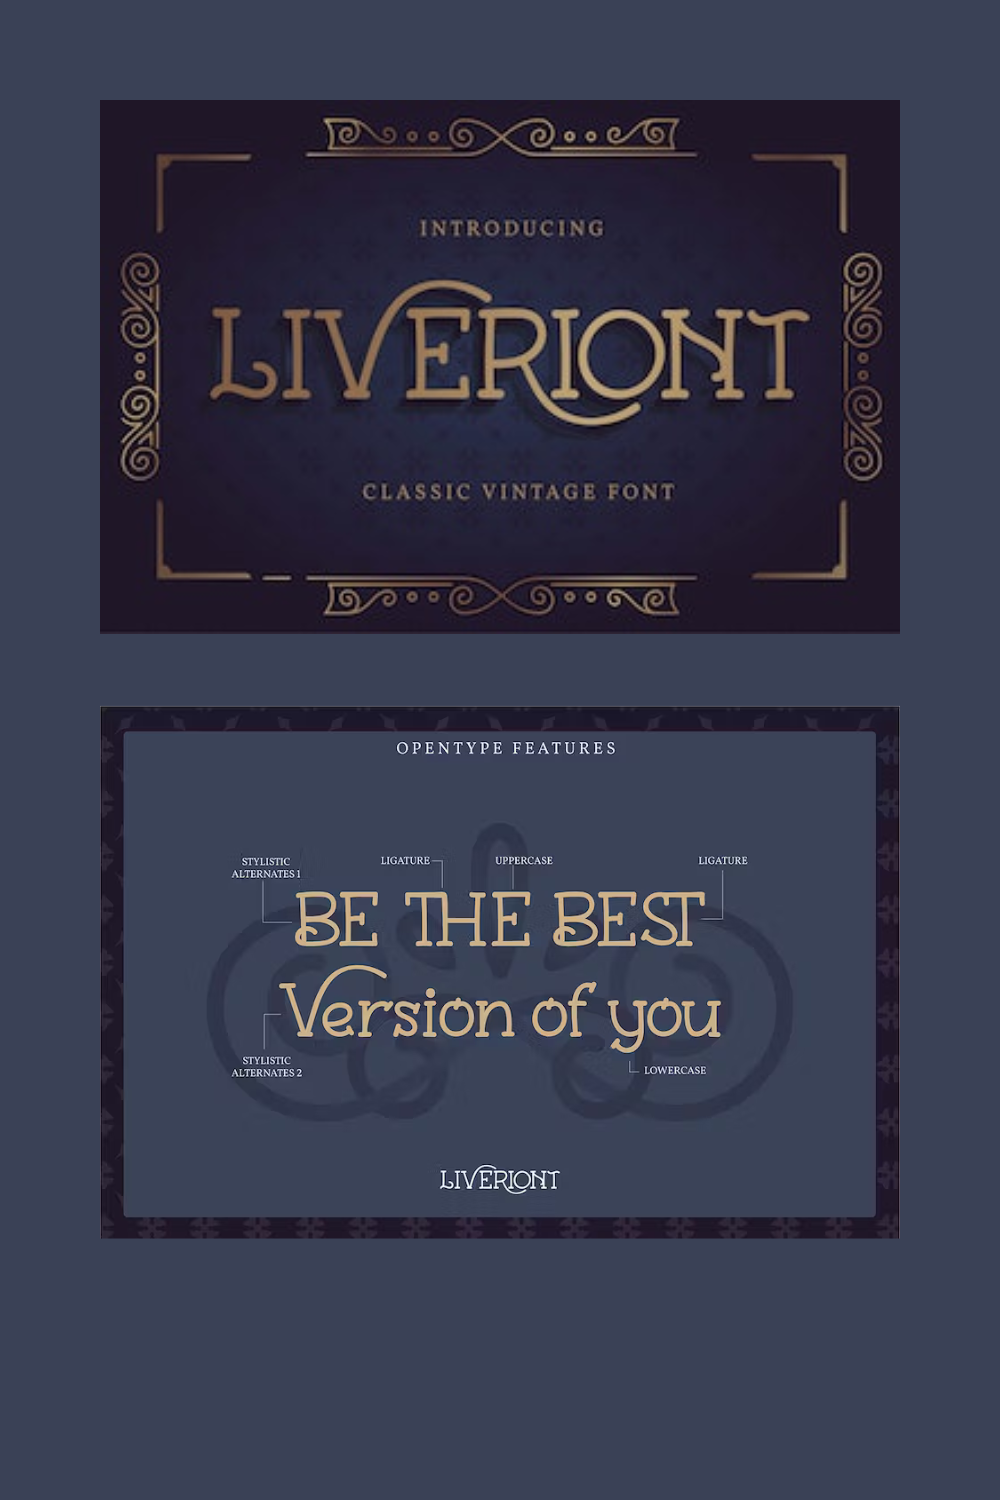 Liveriont | Classic Vintage Font pinterest preview image.